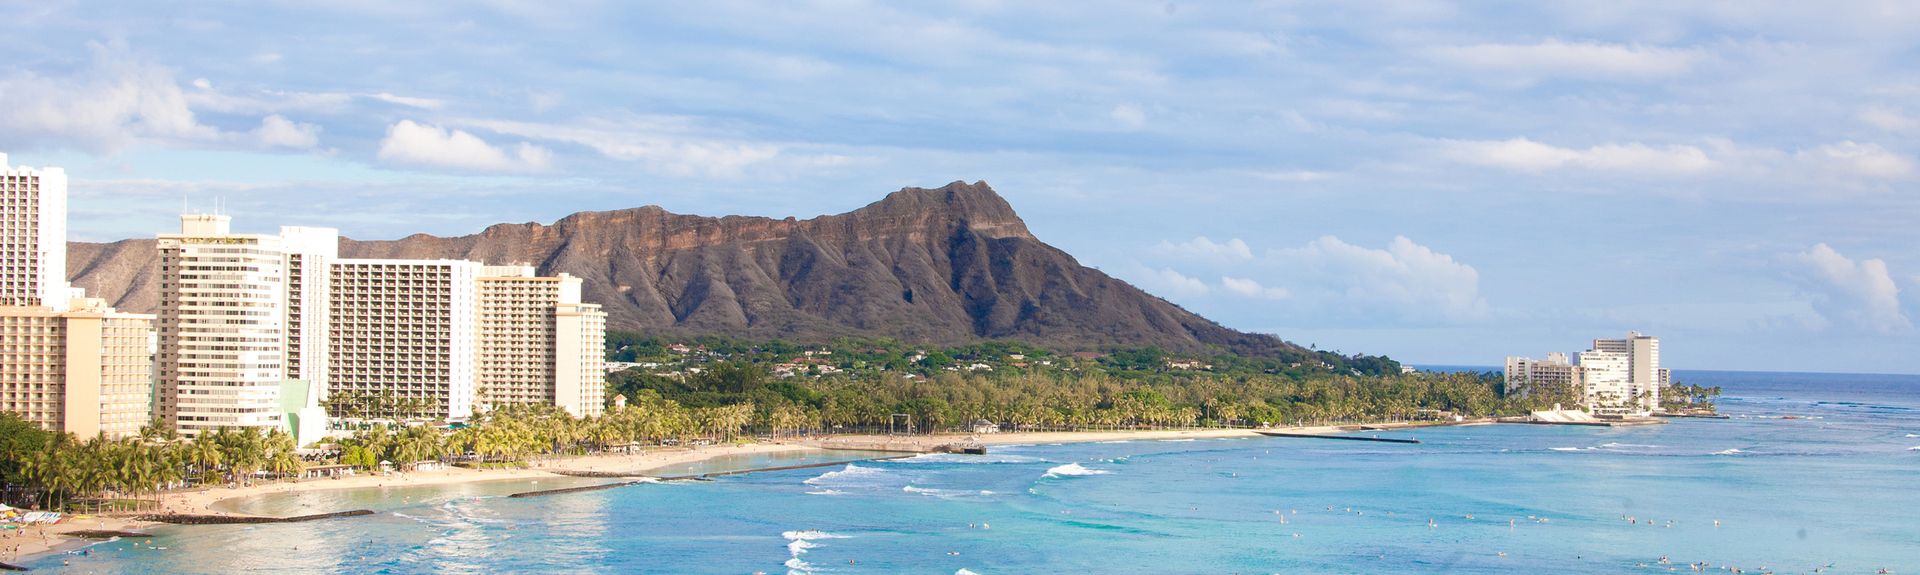 Waikiki Beach Vacation Rentals Condo And Apartment Rentals More